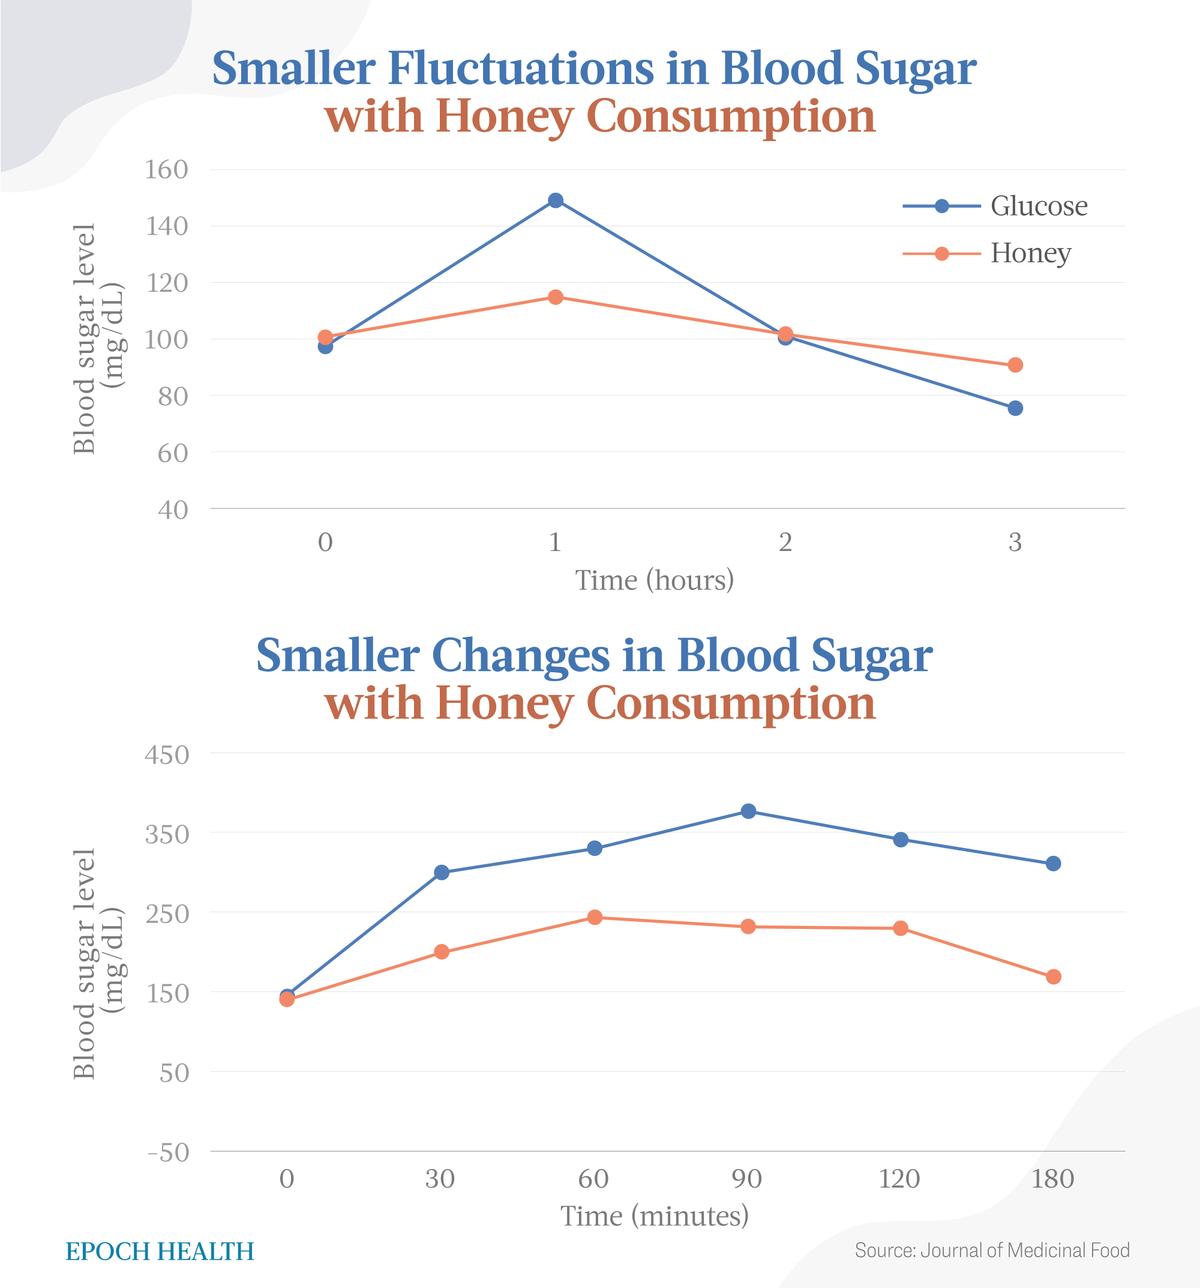 Le persone sane hanno sperimentato fluttuazioni minori dei livelli di zucchero nel sangue quando consumavano miele, mentre i pazienti diabetici hanno mostrato cambiamenti minori nei livelli di zucchero nel sangue con l’assunzione di miele.  (The Epoch Times)